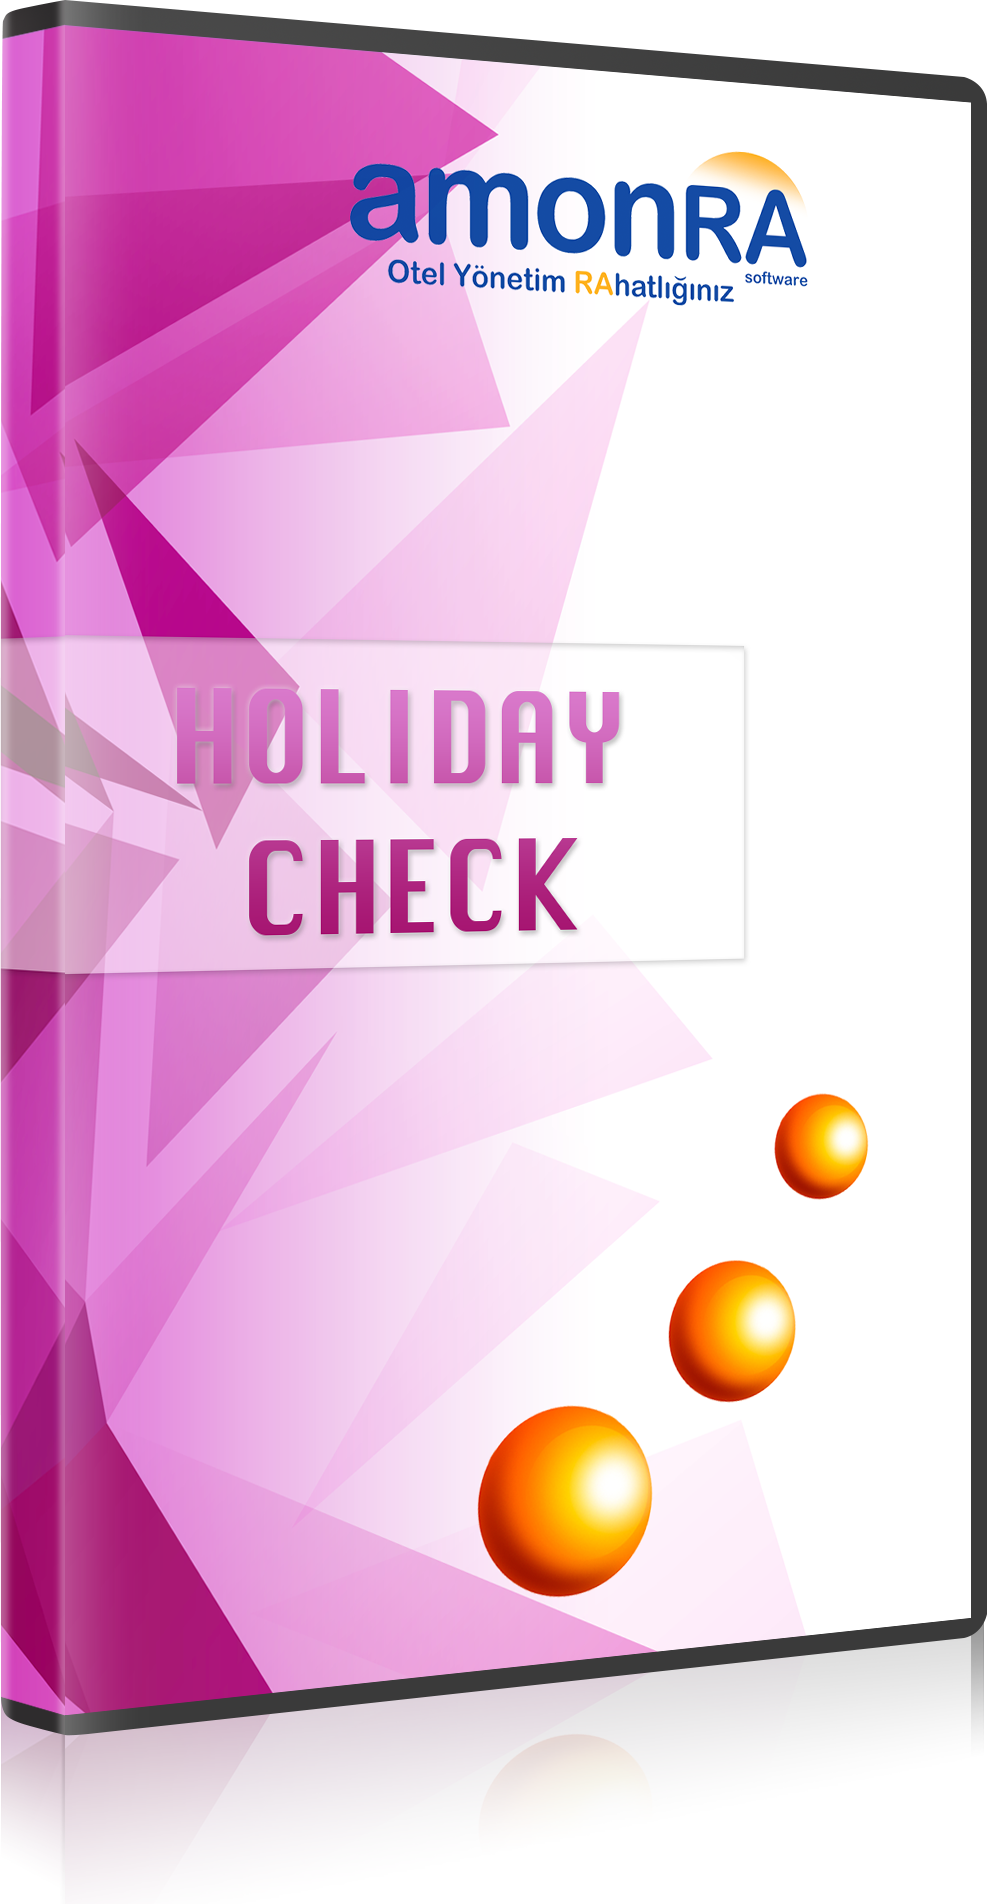 elektracn_amonra_holiday_check